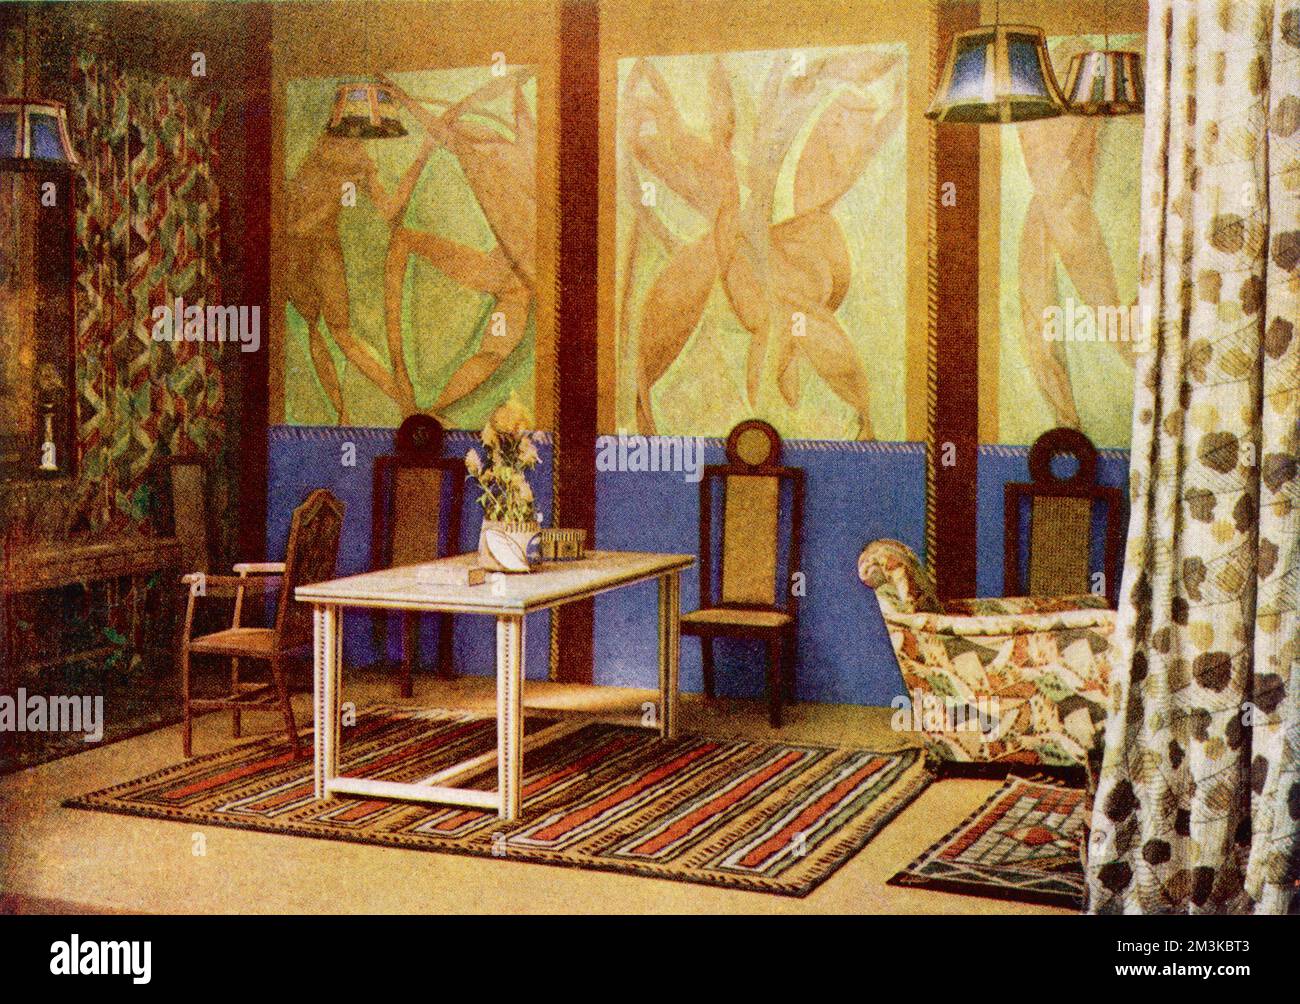 Ein Raum, inspiriert vom Post-Impressionismus, entworfen von Roger Fry, wo alles, einschließlich der Möbel und Ornamente kubistisch war. Es wurde von Omega Workshops, einem Londoner Designstudio, das 1913 von Fry gegründet wurde, geschaffen. Datum: 25.. Oktober 1913 Stockfoto